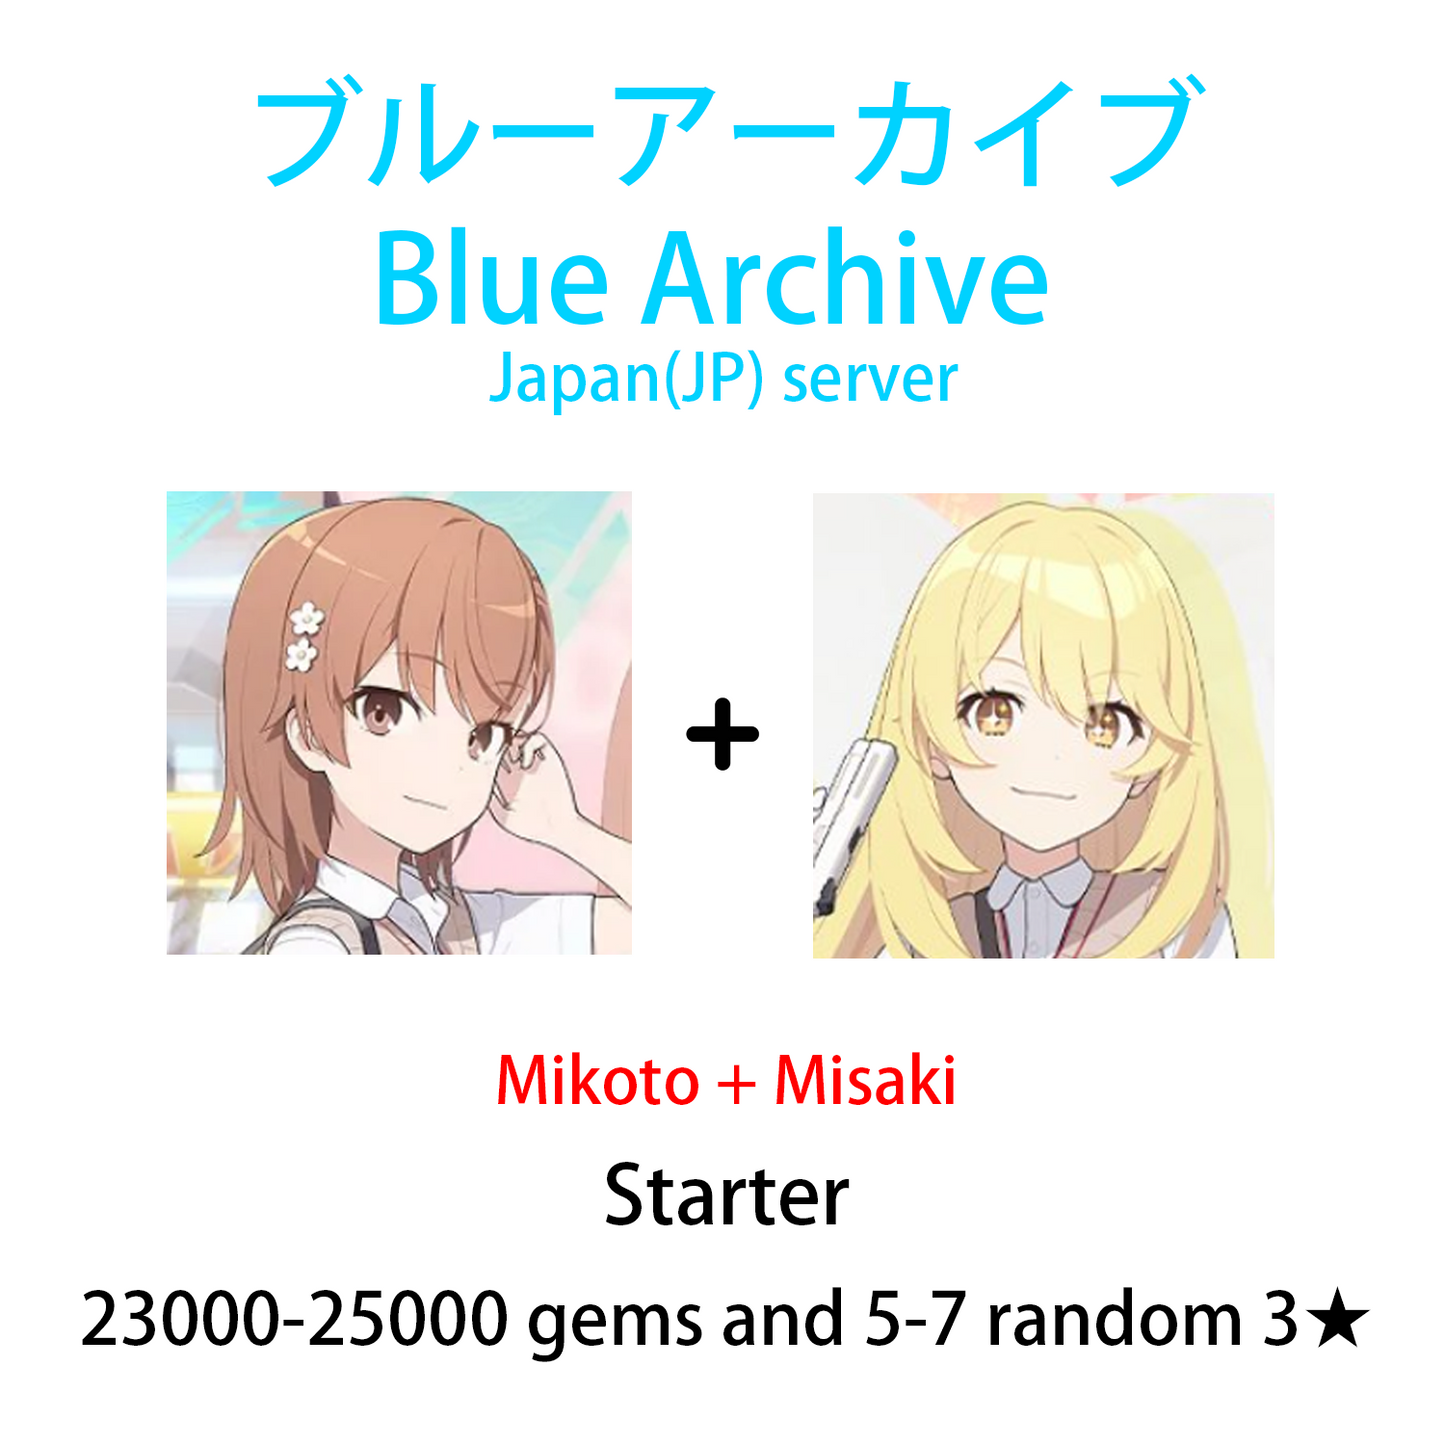 [JP] [INSTANT] Blue Archive Railgun Mikoto Misaki + 24-25k gems Starter Account-Mobile Games Starter